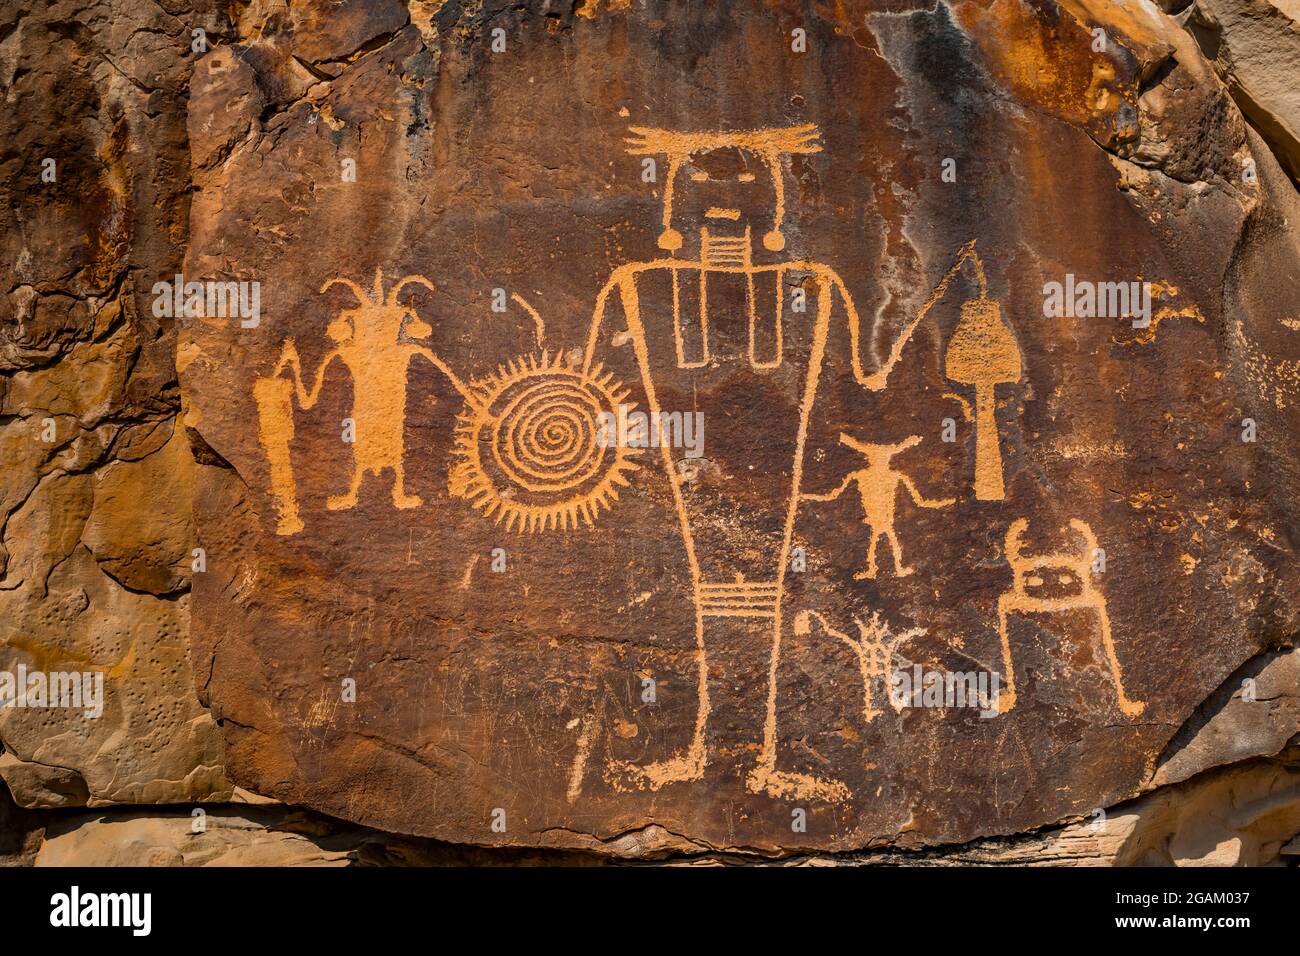 Espectacular panel de figuras humanas estilizadas en McKee Spring Petroglyph Site, Dinosaur National Monument, Utah, Estados Unidos Foto de stock